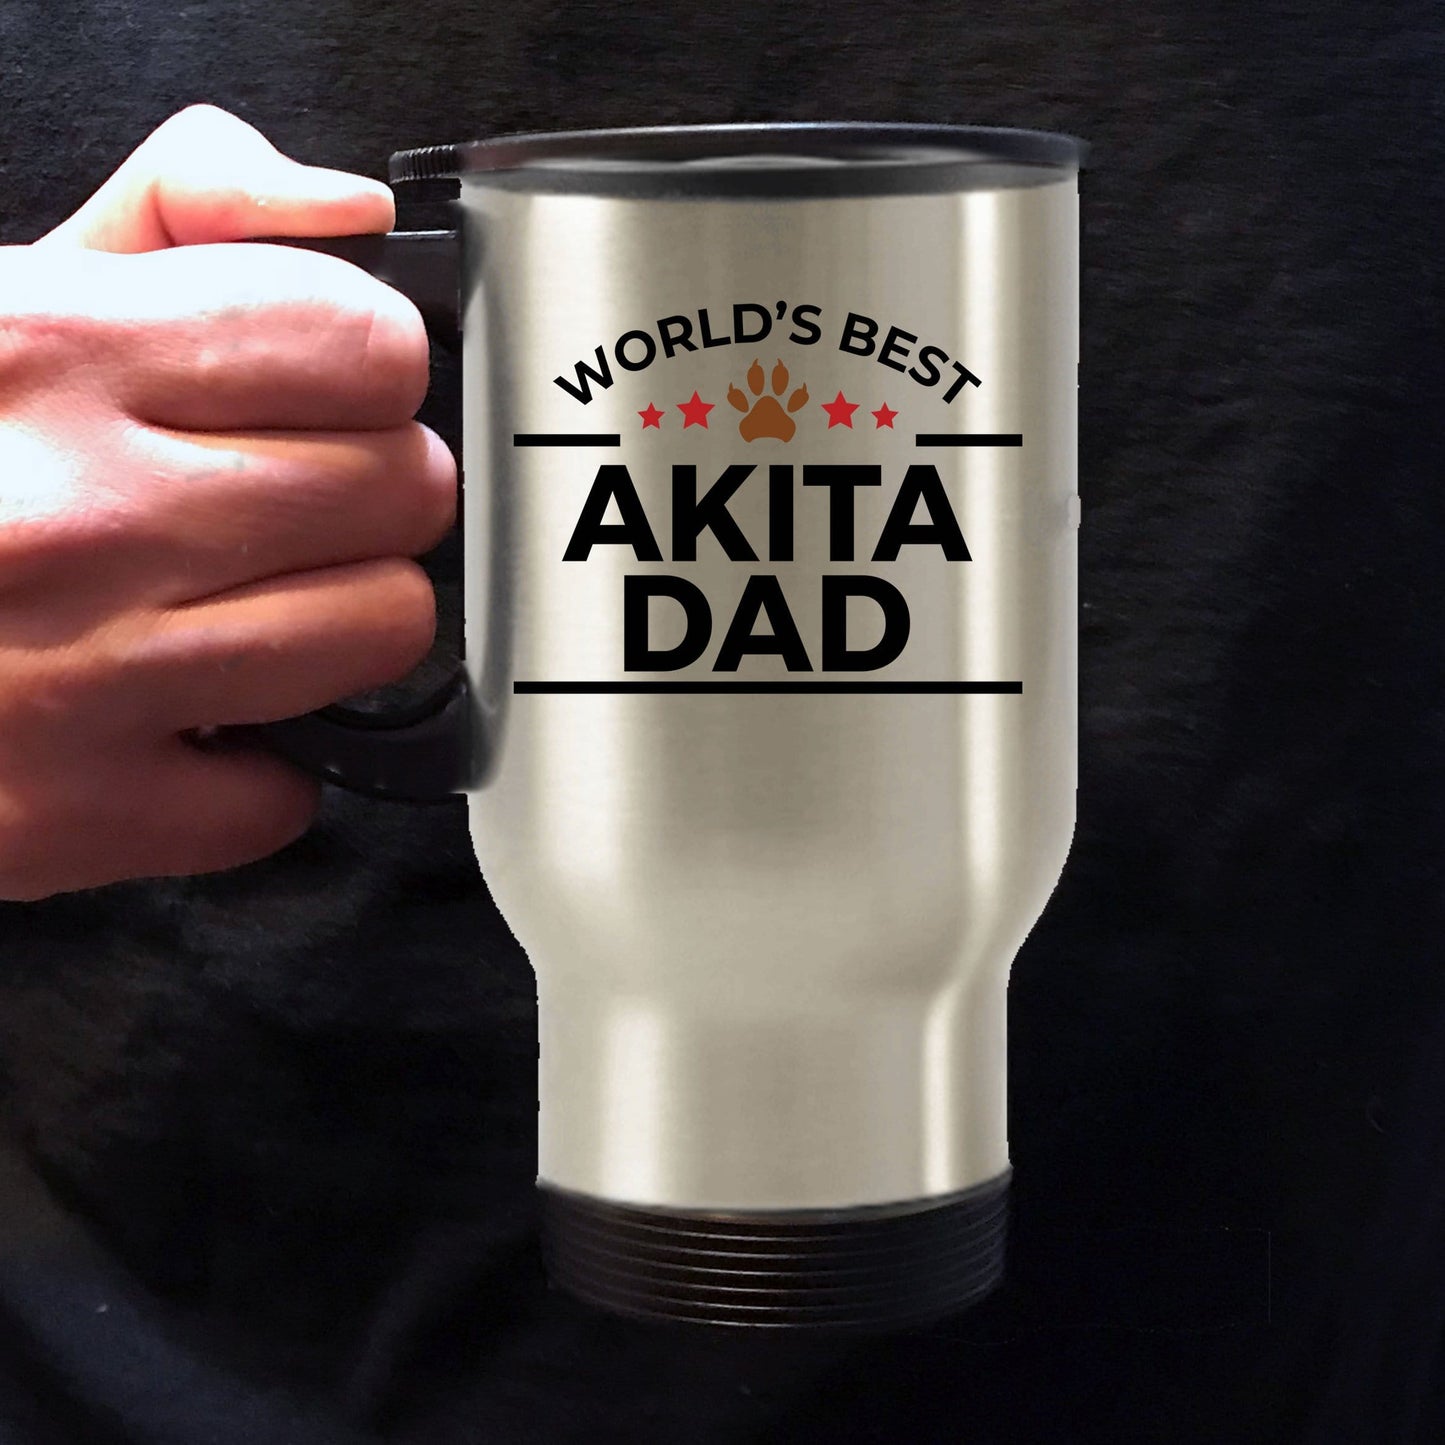 Akita Dog Dad Travel Coffee Mug